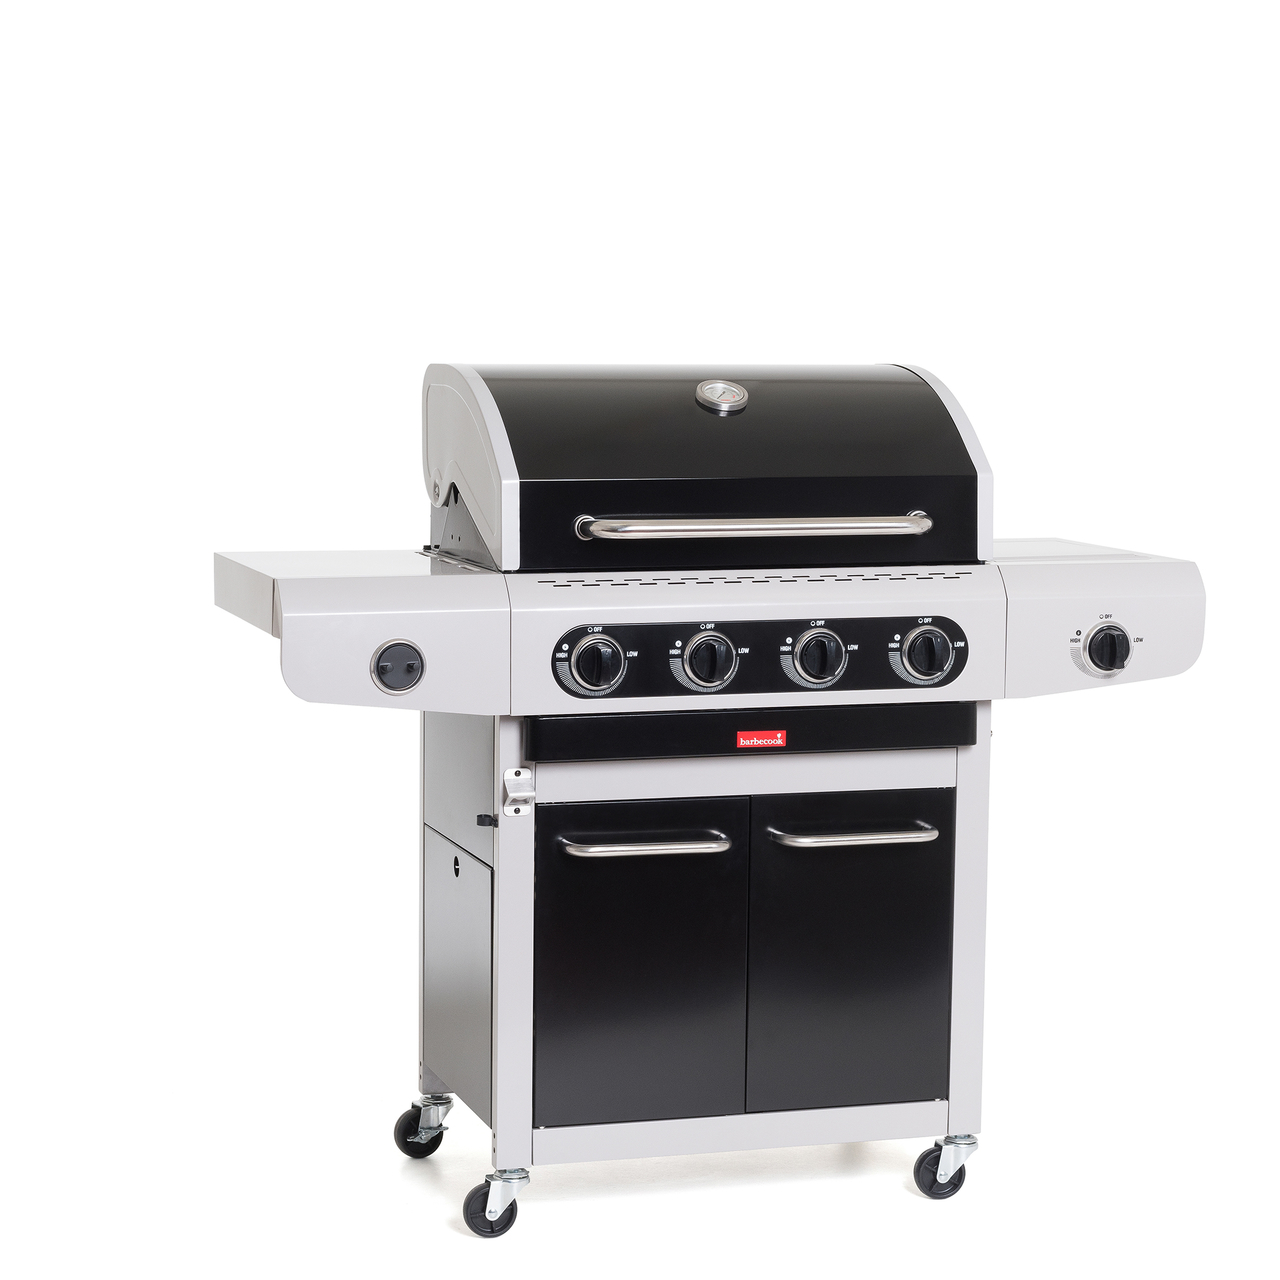 Vertrek Bedachtzaam Aggregaat Barbecook Siesta 412 Black Edition Gasbarbecue | Buiten Koken - Kookwinkel  Kitchen&More